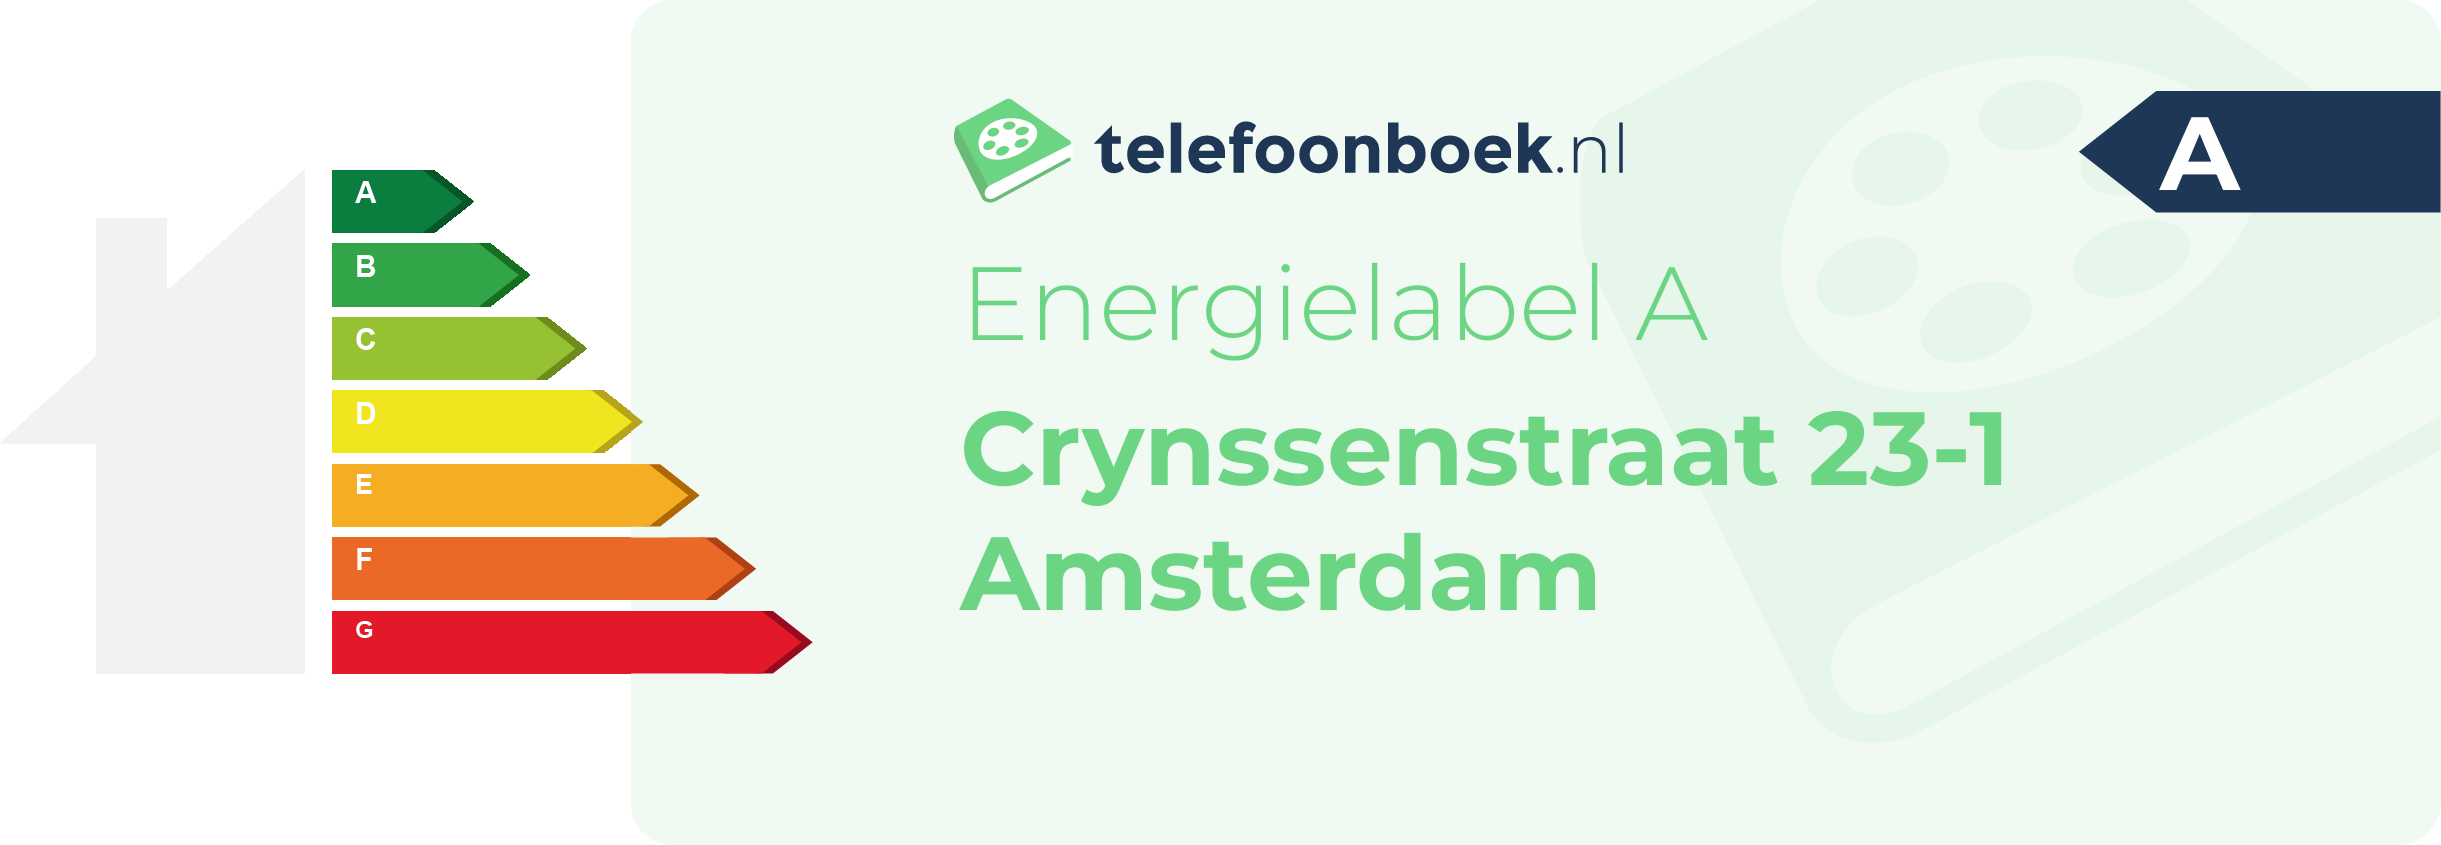 Energielabel Crynssenstraat 23-1 Amsterdam